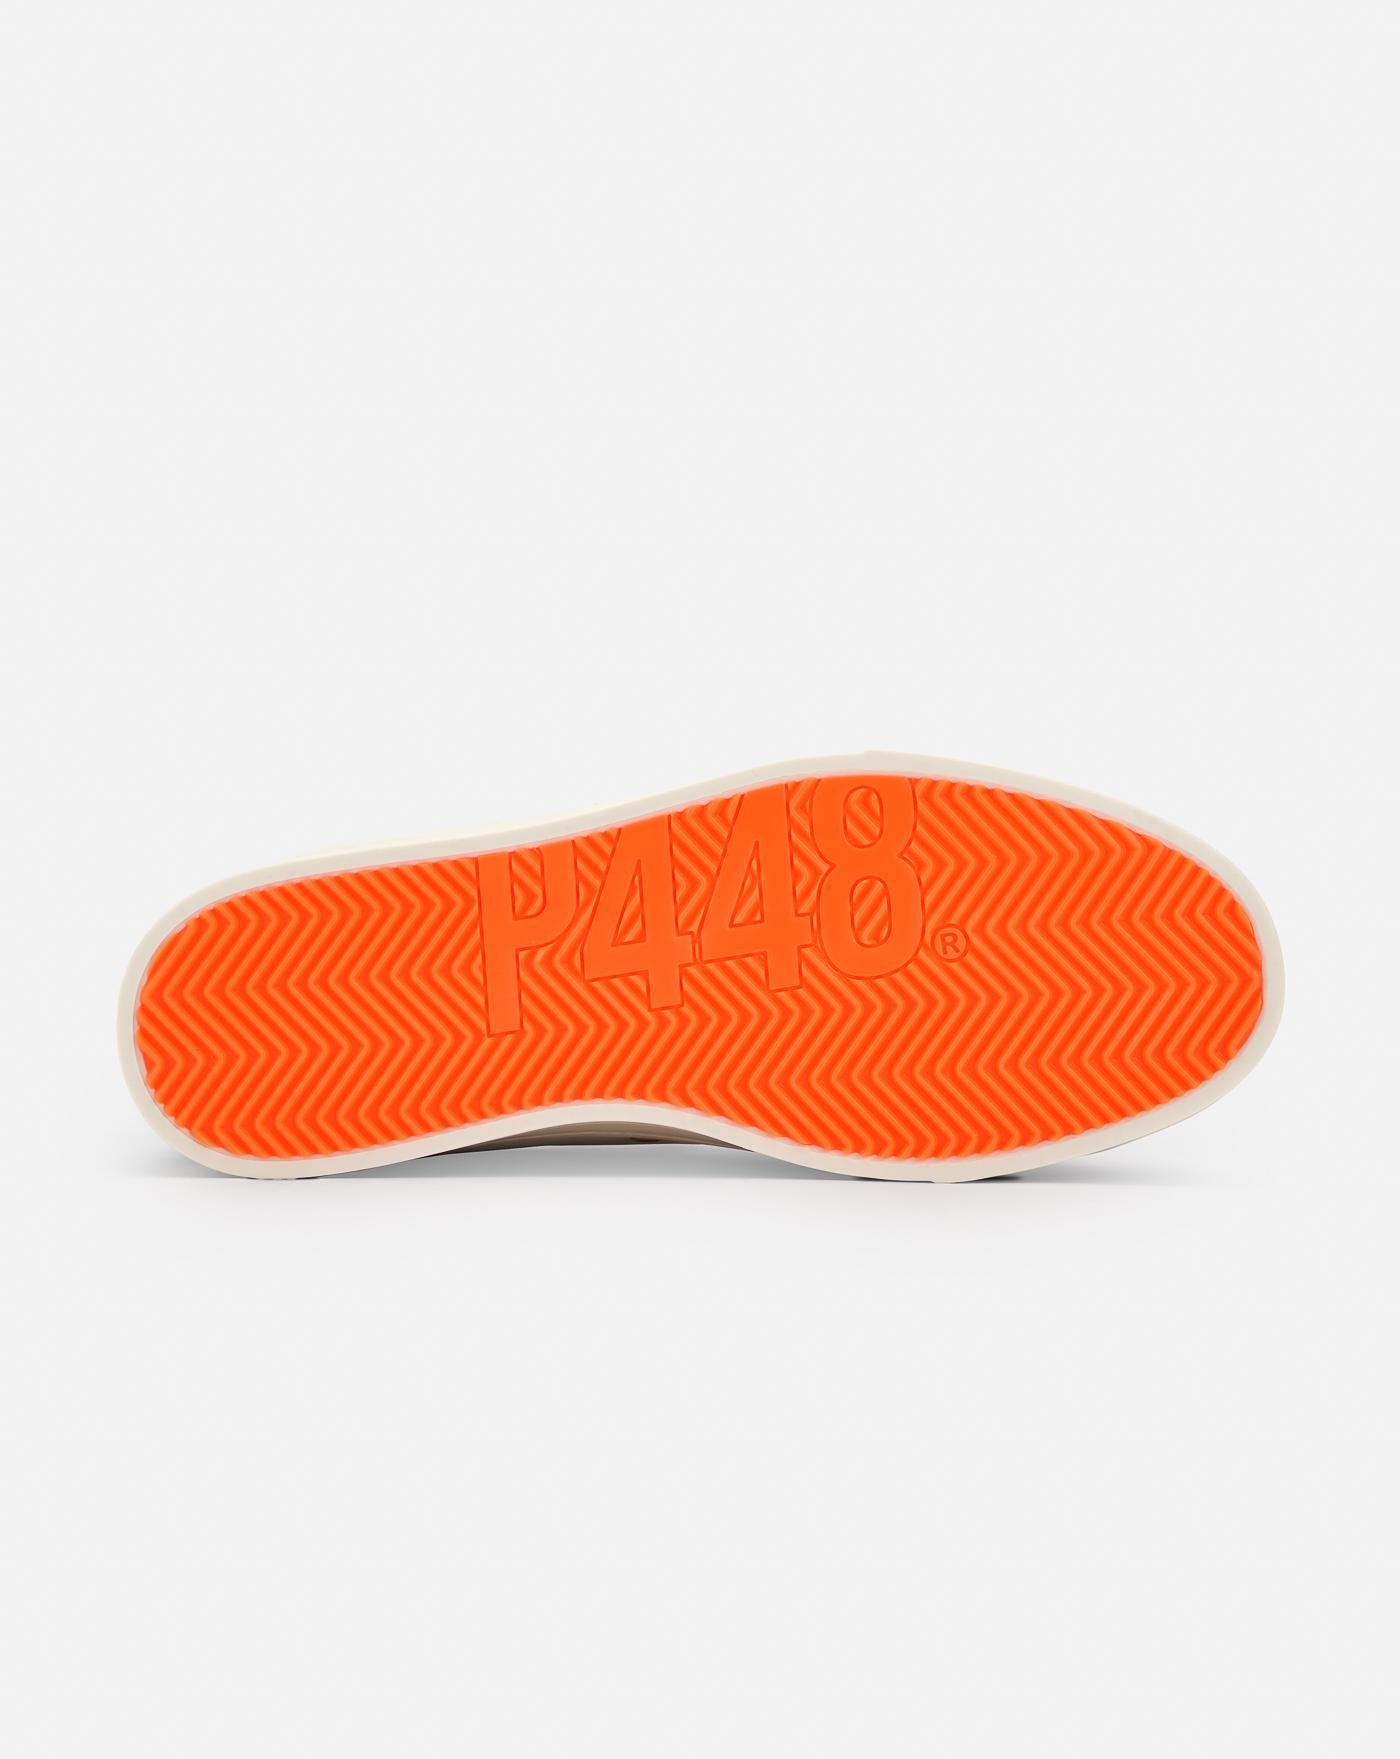 p448-zapatillas-jack-whi-neo-sneakers-white-orange-blancas-3